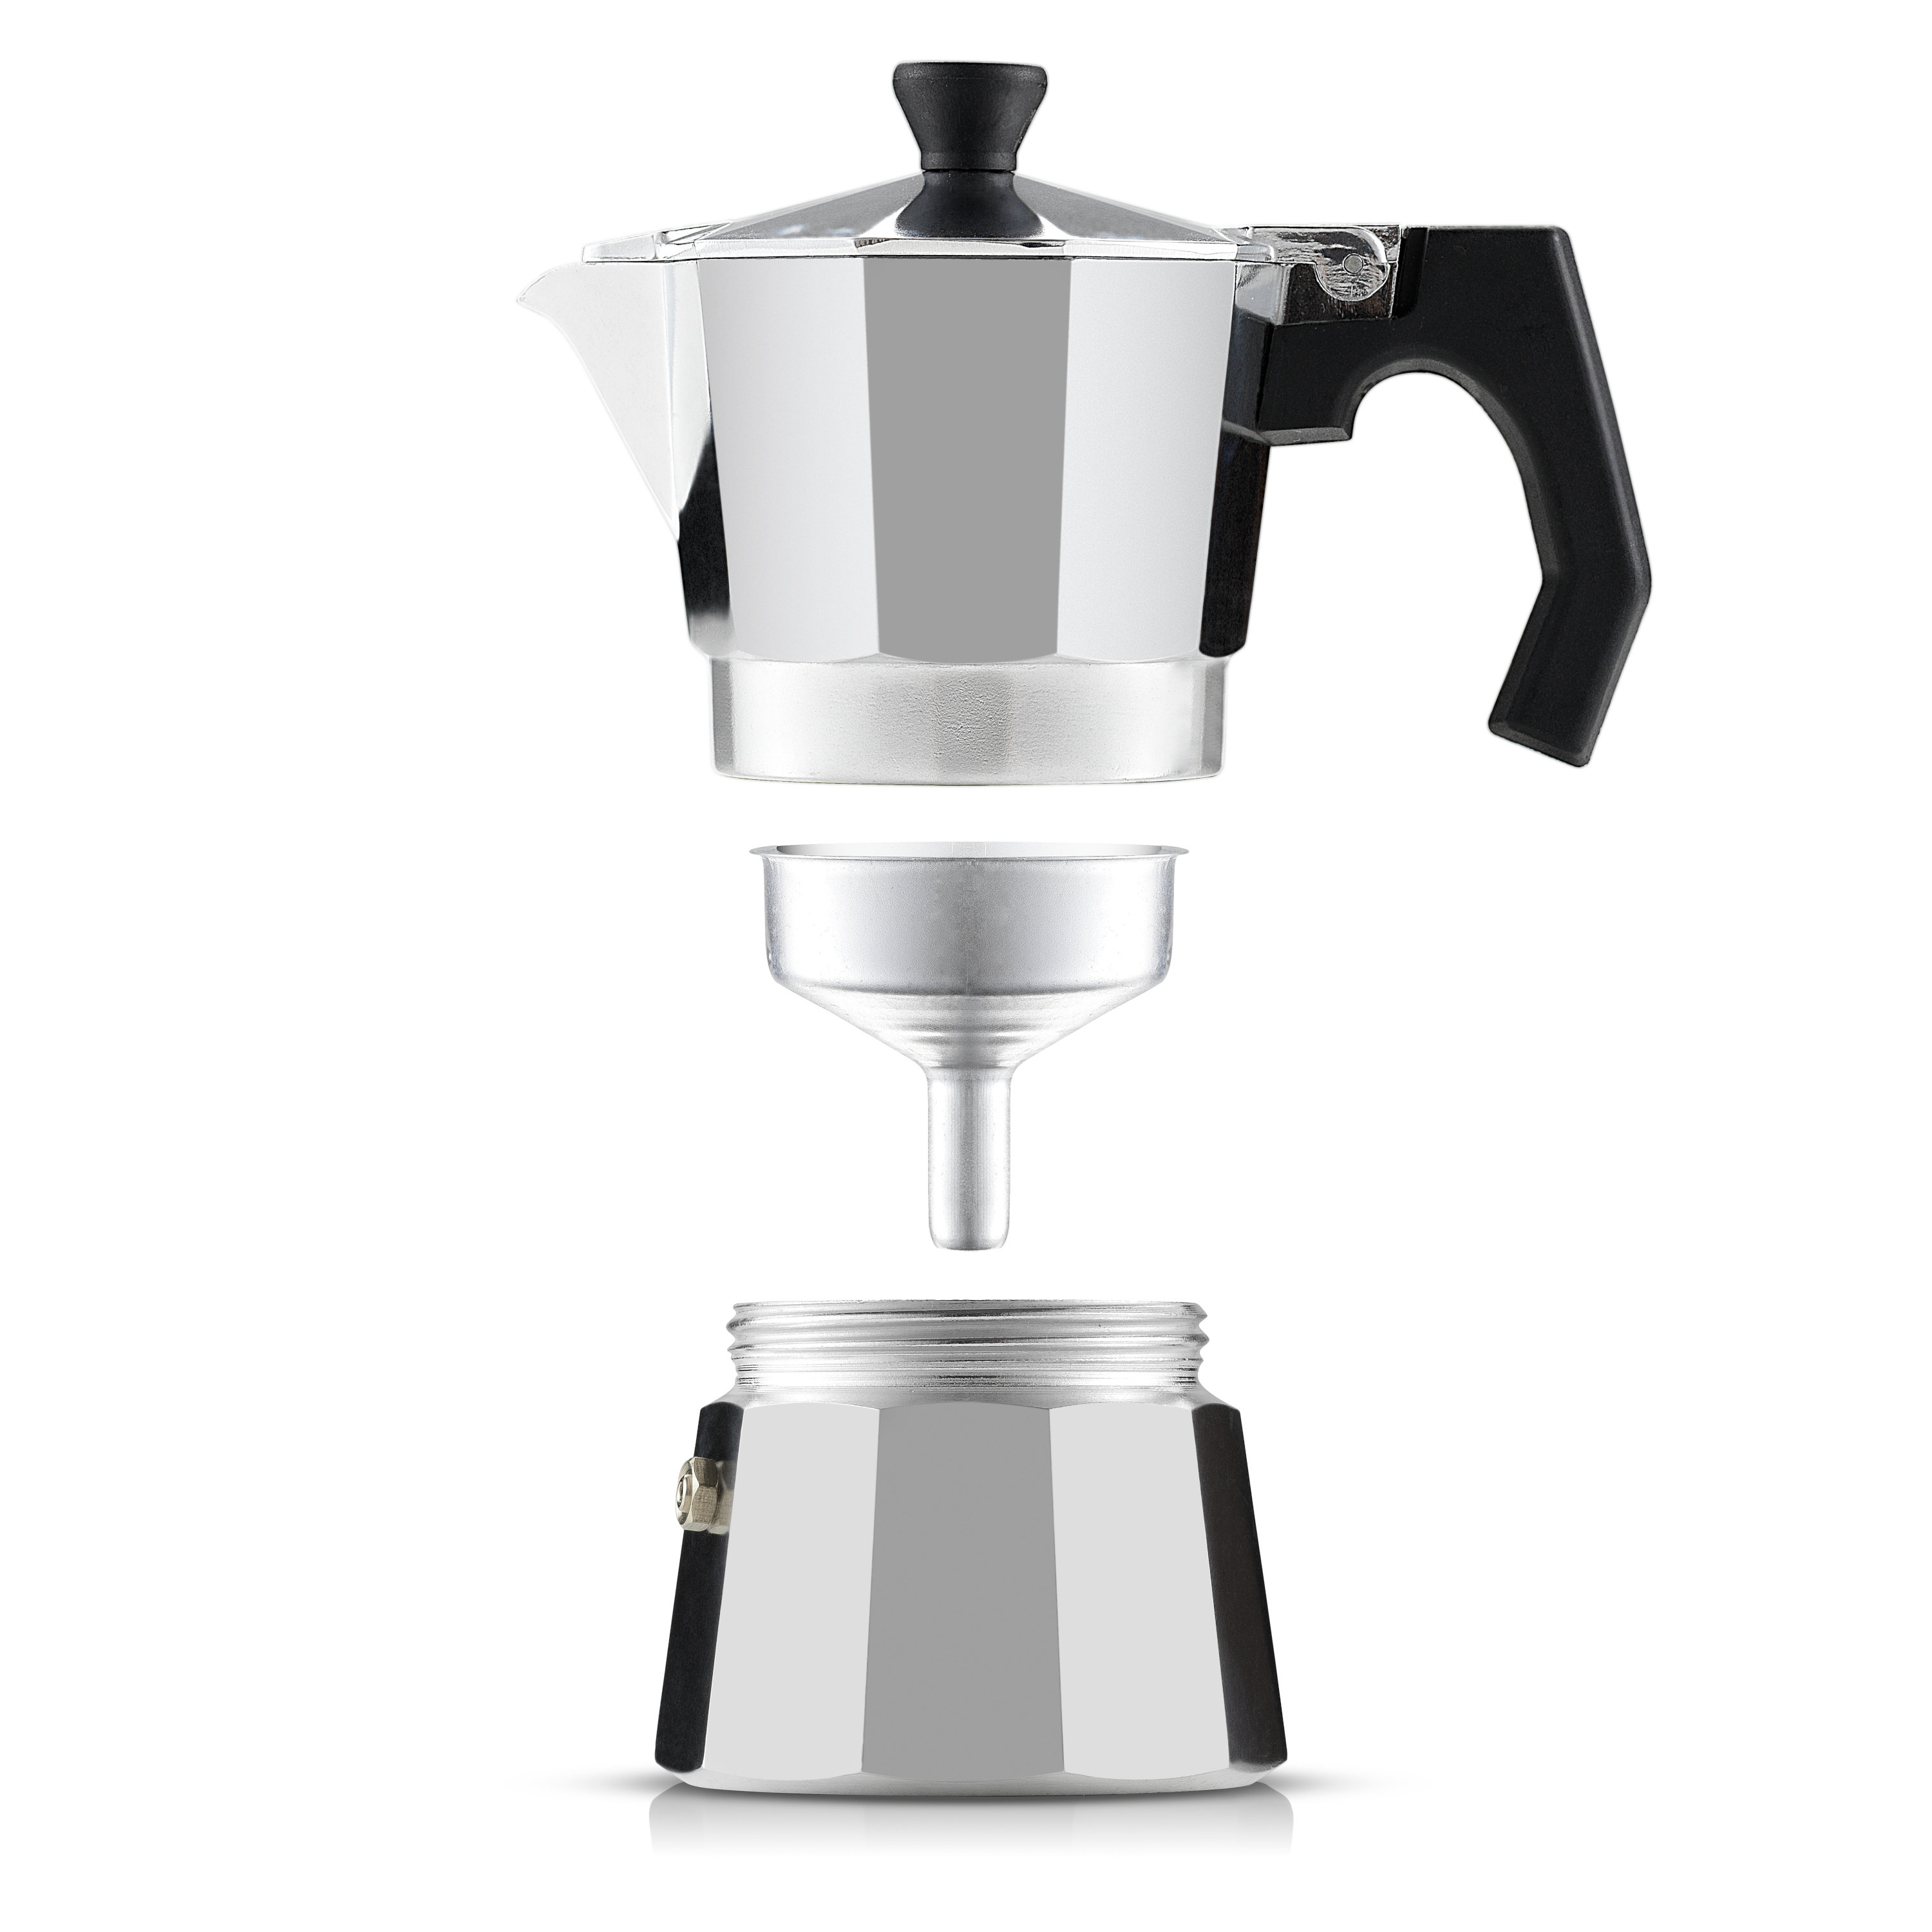 https://assets.wfcdn.com/im/59098960/compr-r85/2207/220713900/joyjolt-italian-moka-pot-stovetop-espresso-maker.jpg